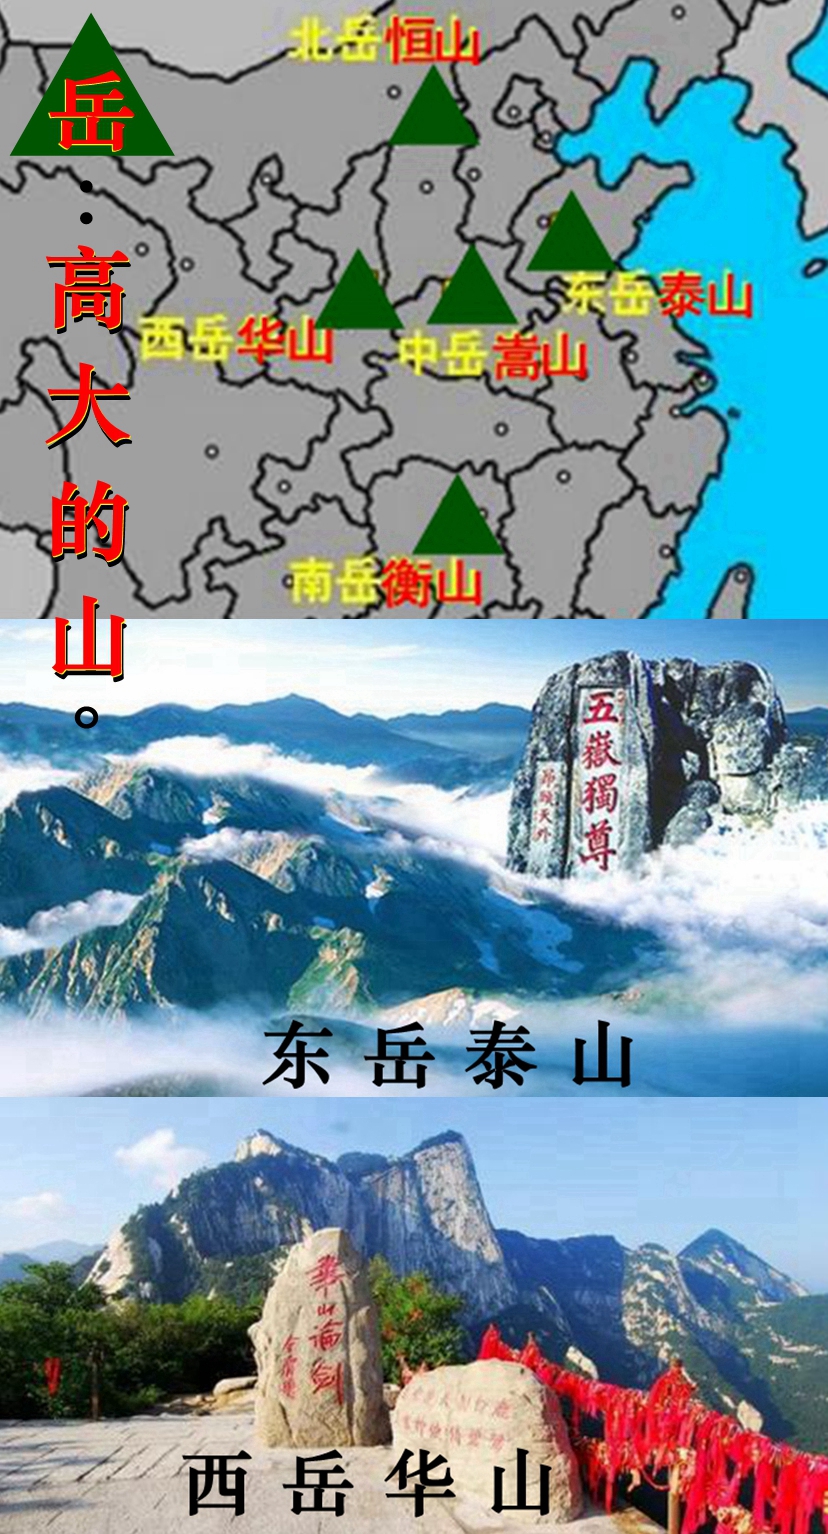 五岳是我国五大名山的总称,即东岳泰山,西岳华山,北岳恒山,中岳嵩山